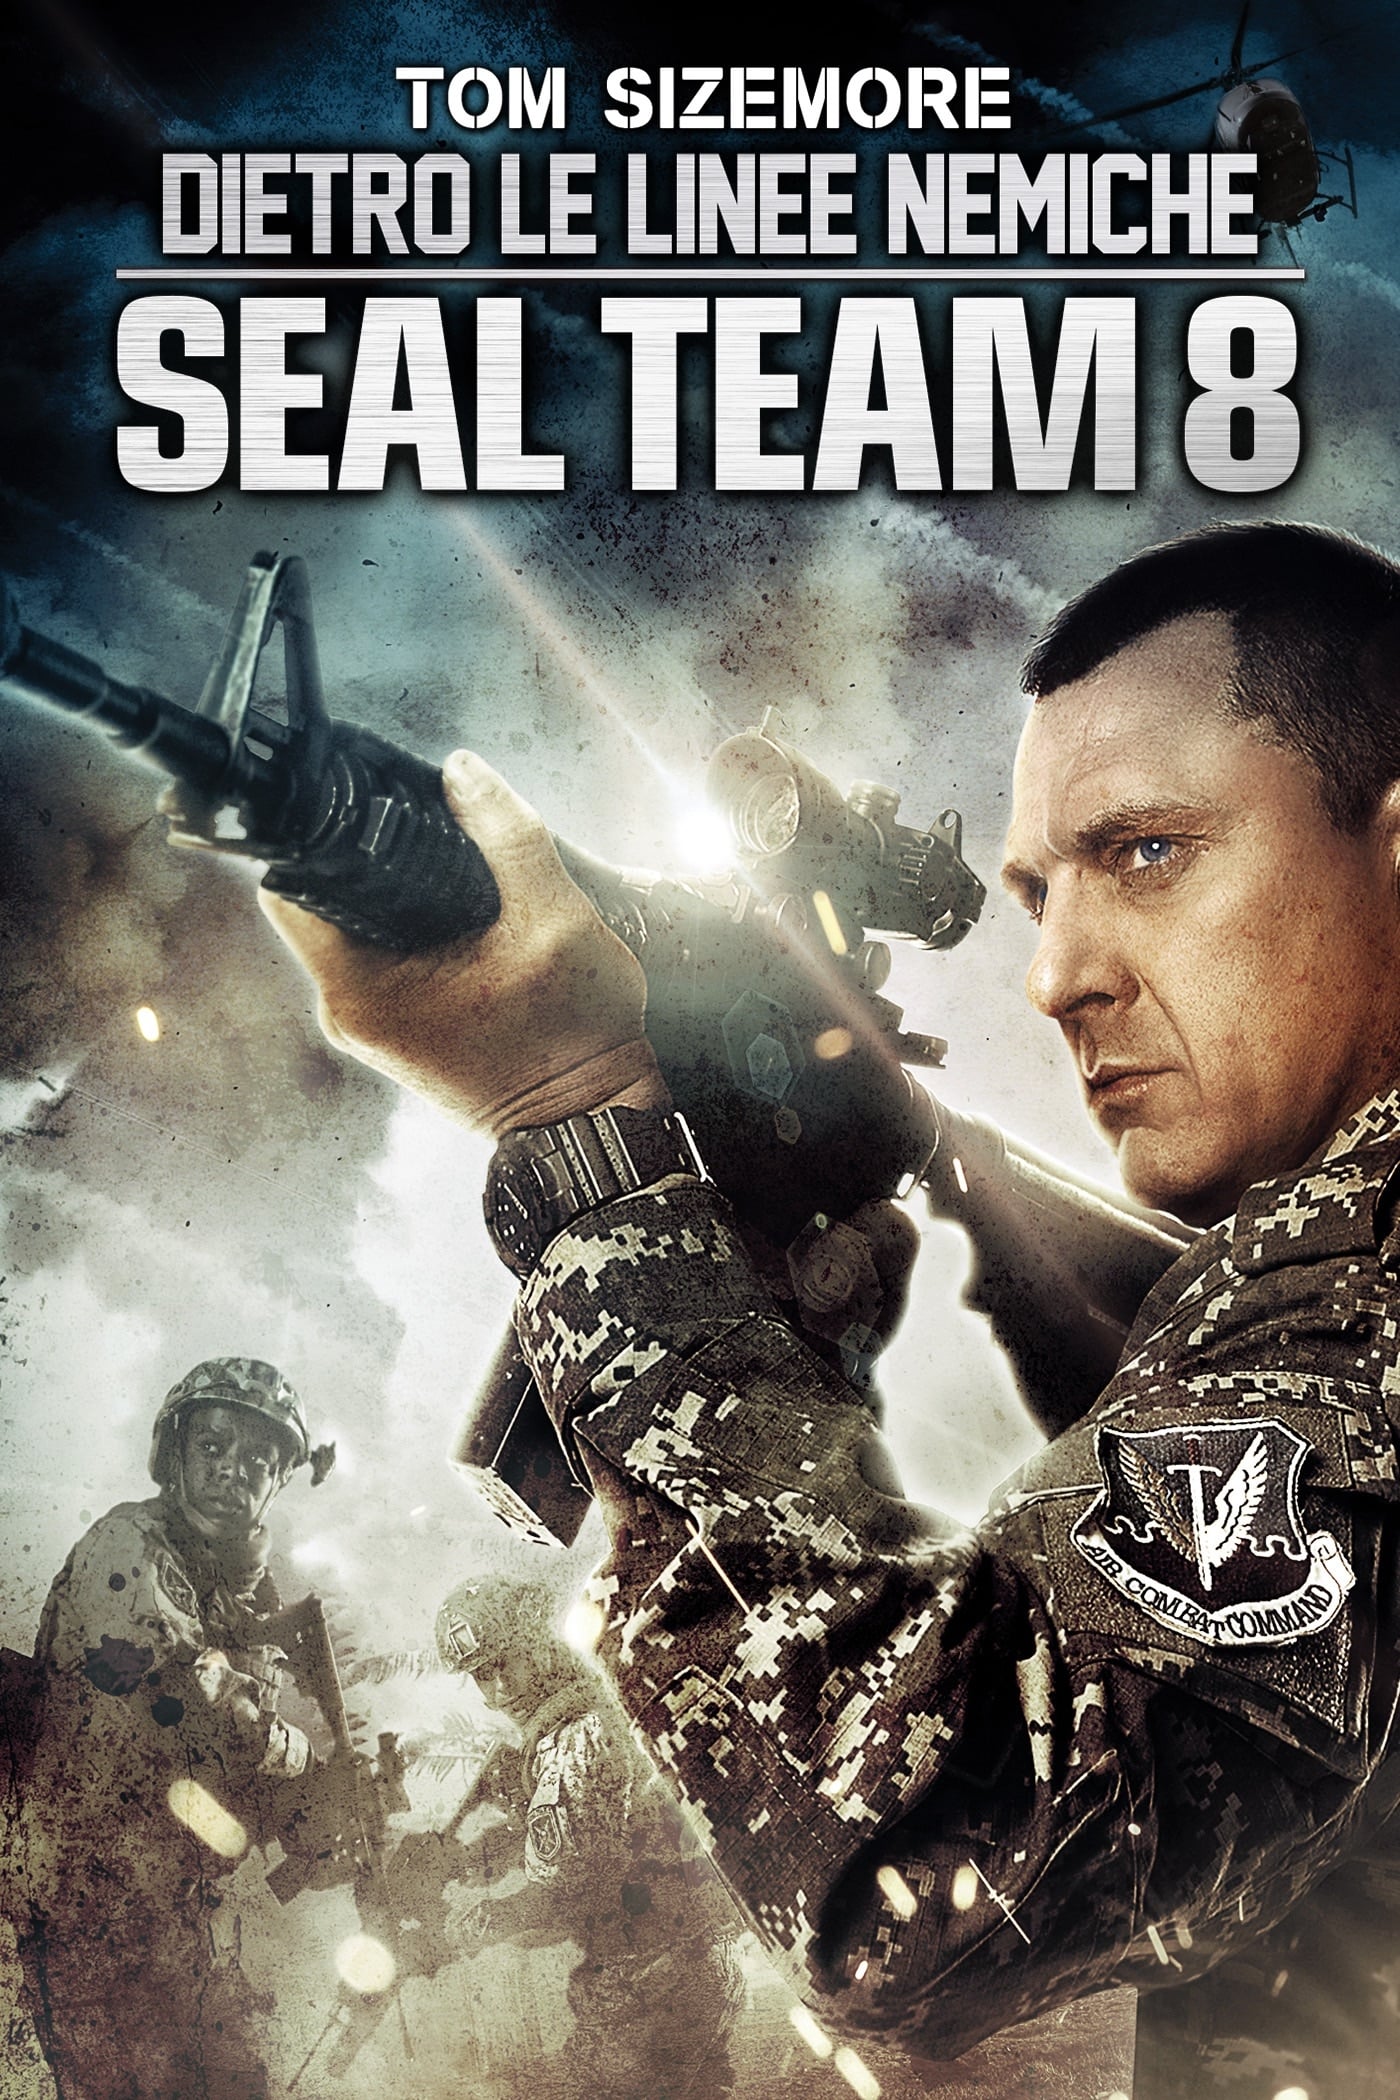 Dietro le linee nemiche - Seal Team 8 film